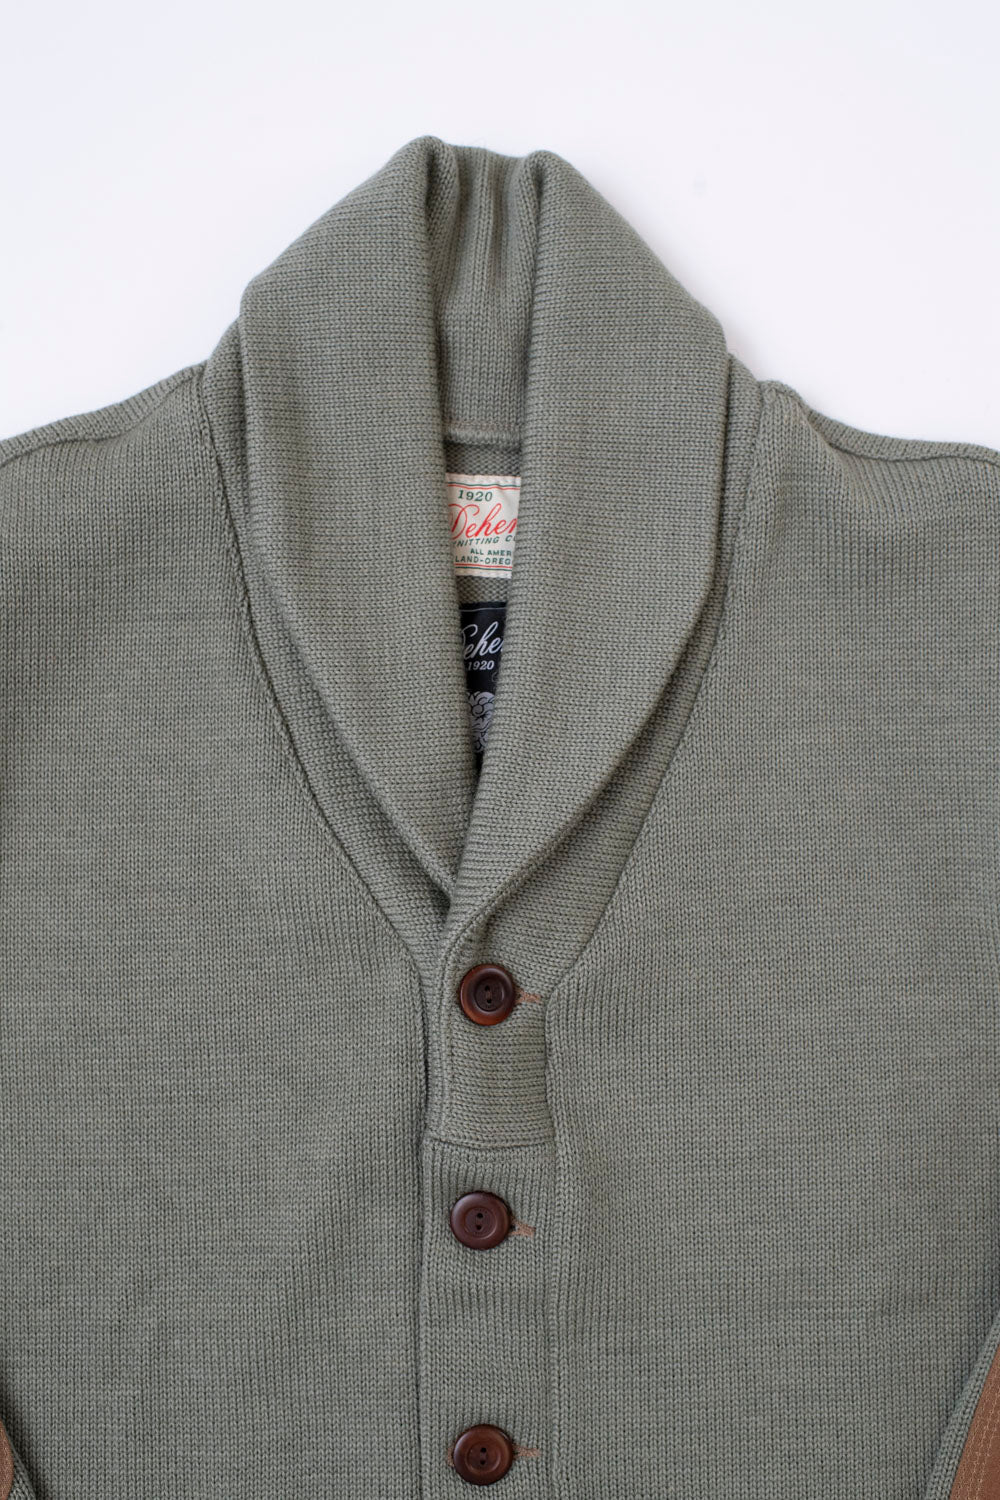 James Dant x Dehen - Shawl Sweater Coat 2.0 - Sage, Field Tan